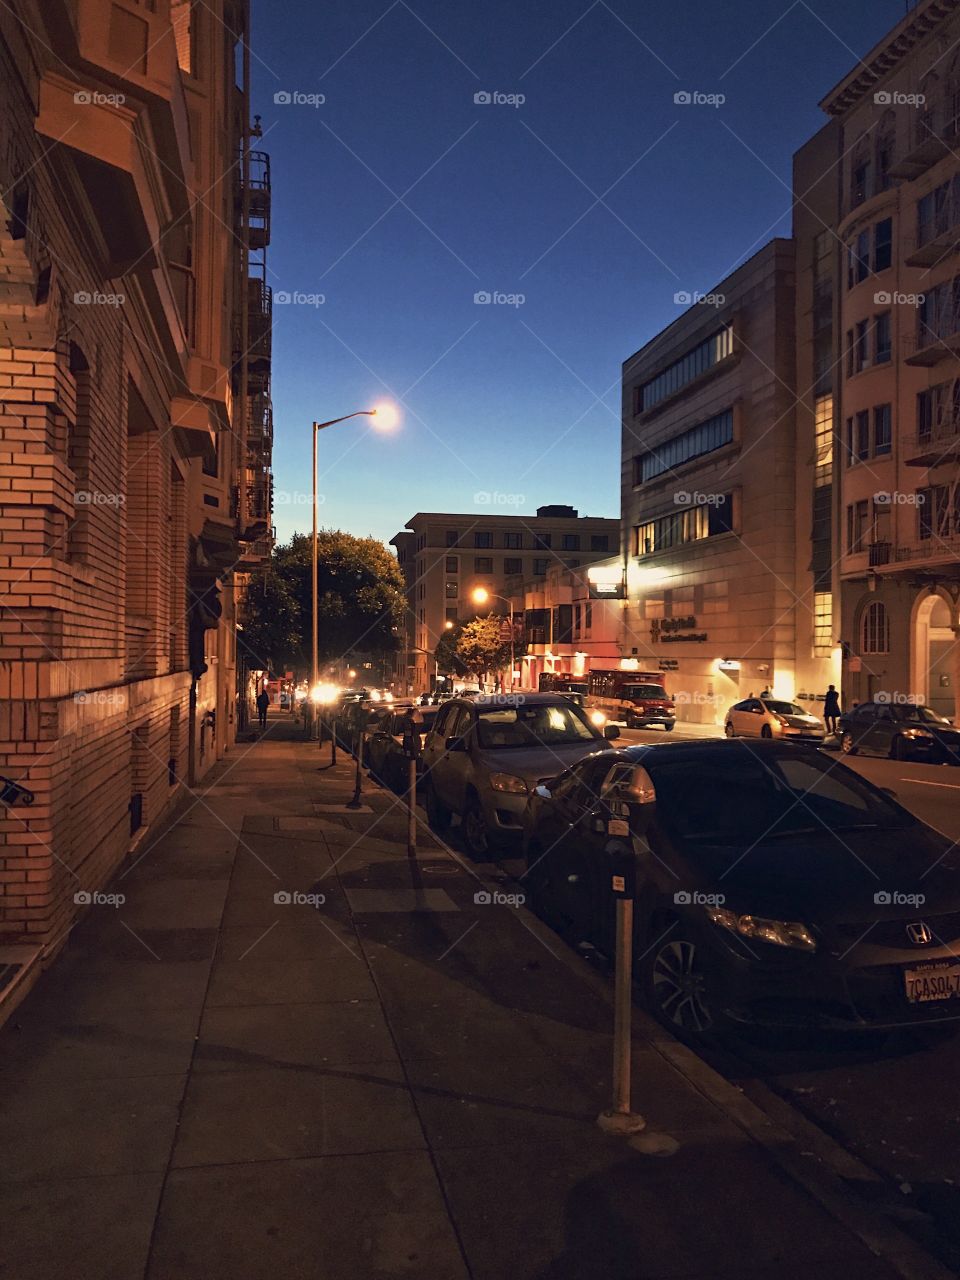 San Francisco's Nob Hill at night